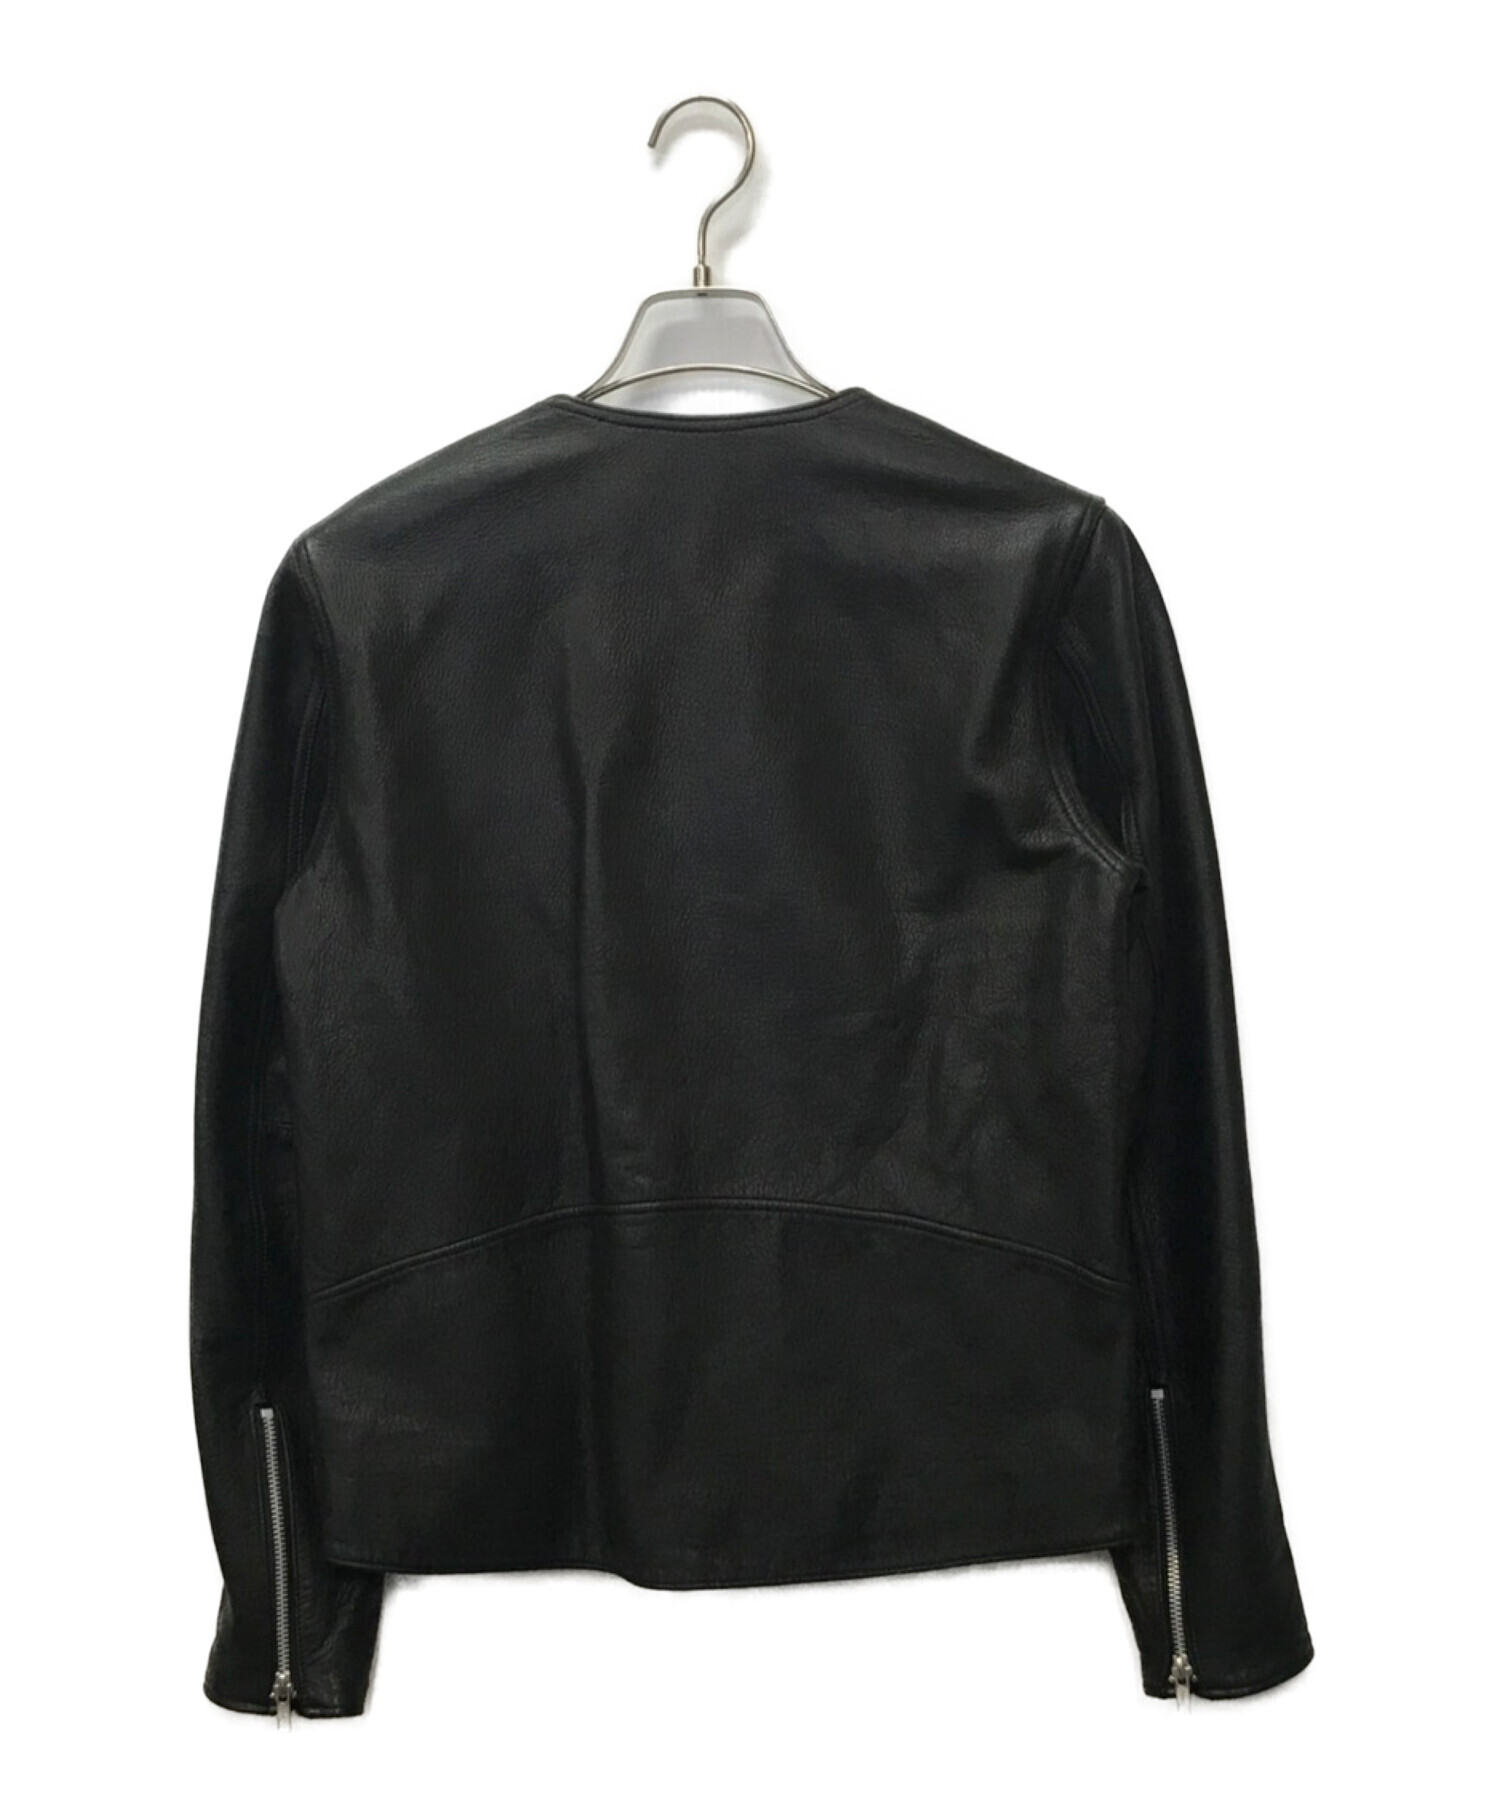 whiz limited (ウィズリミテッド) ノーカラーレザーライダースジャケット ブラック サイズ:M